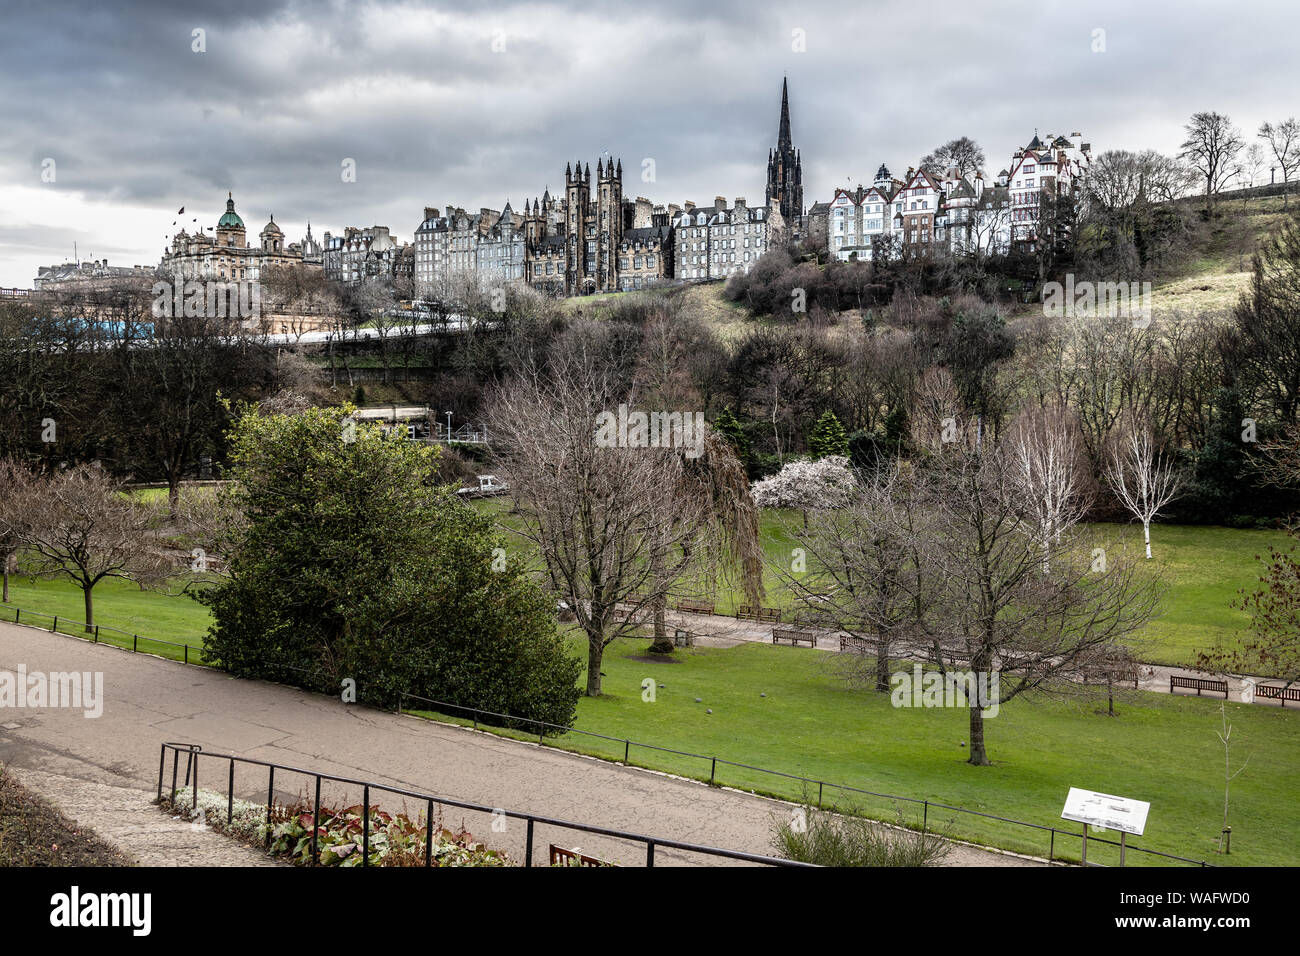 Iconic Ansicht der alten Häuser und Gebäude der Altstadt von Edinburgh mit Princes Gardens im Vordergrund. Stockfoto